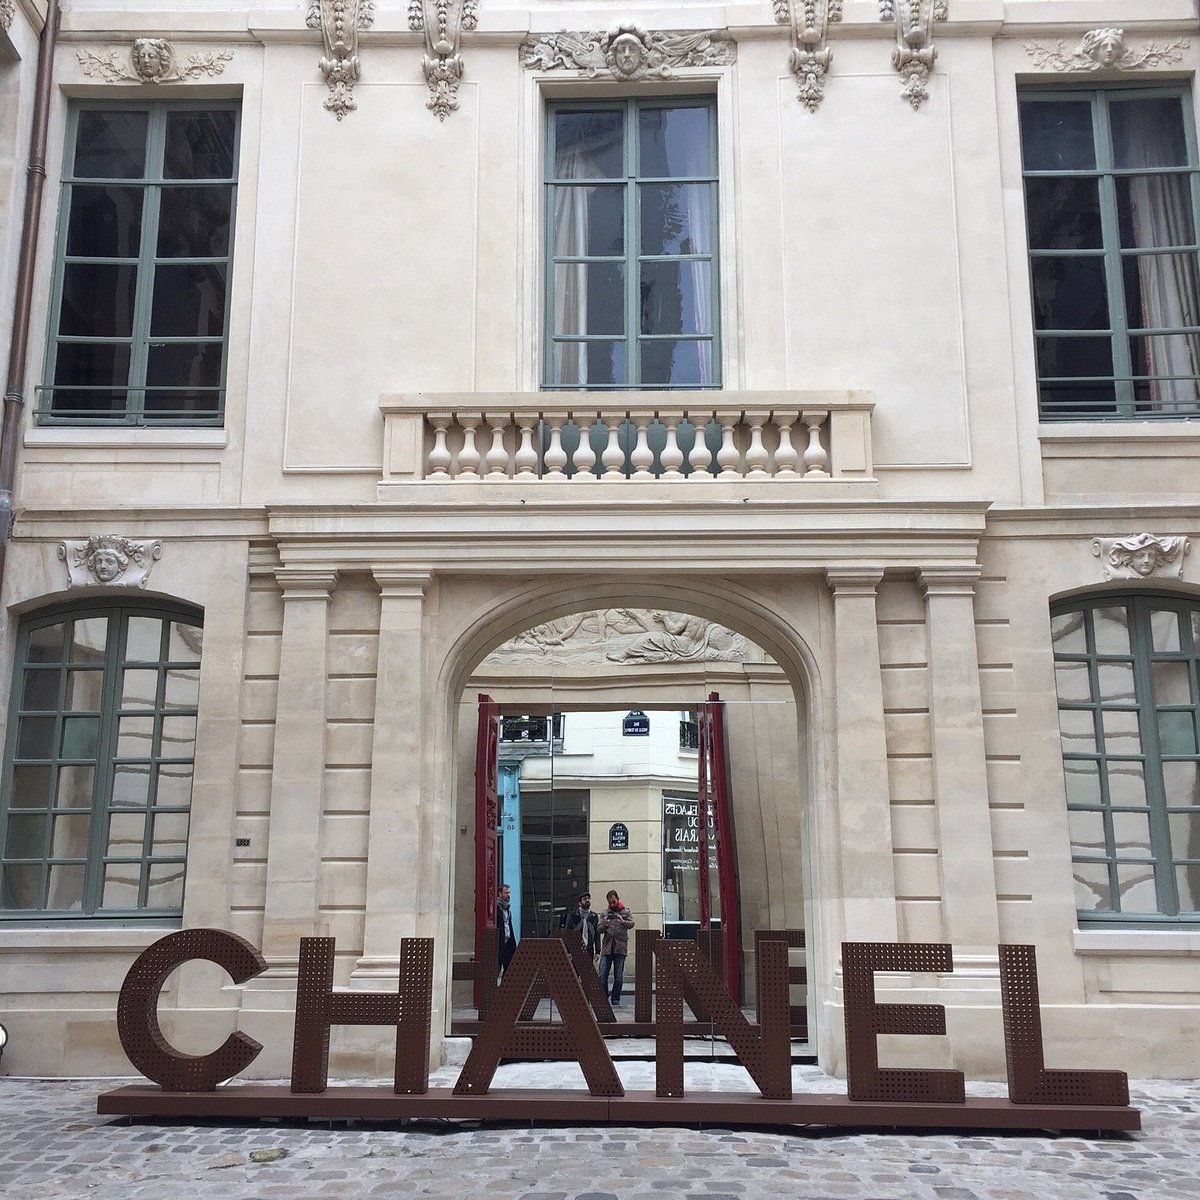 CHANEL OPENS POP-UP STORES IN LE MARAIS, PARIS